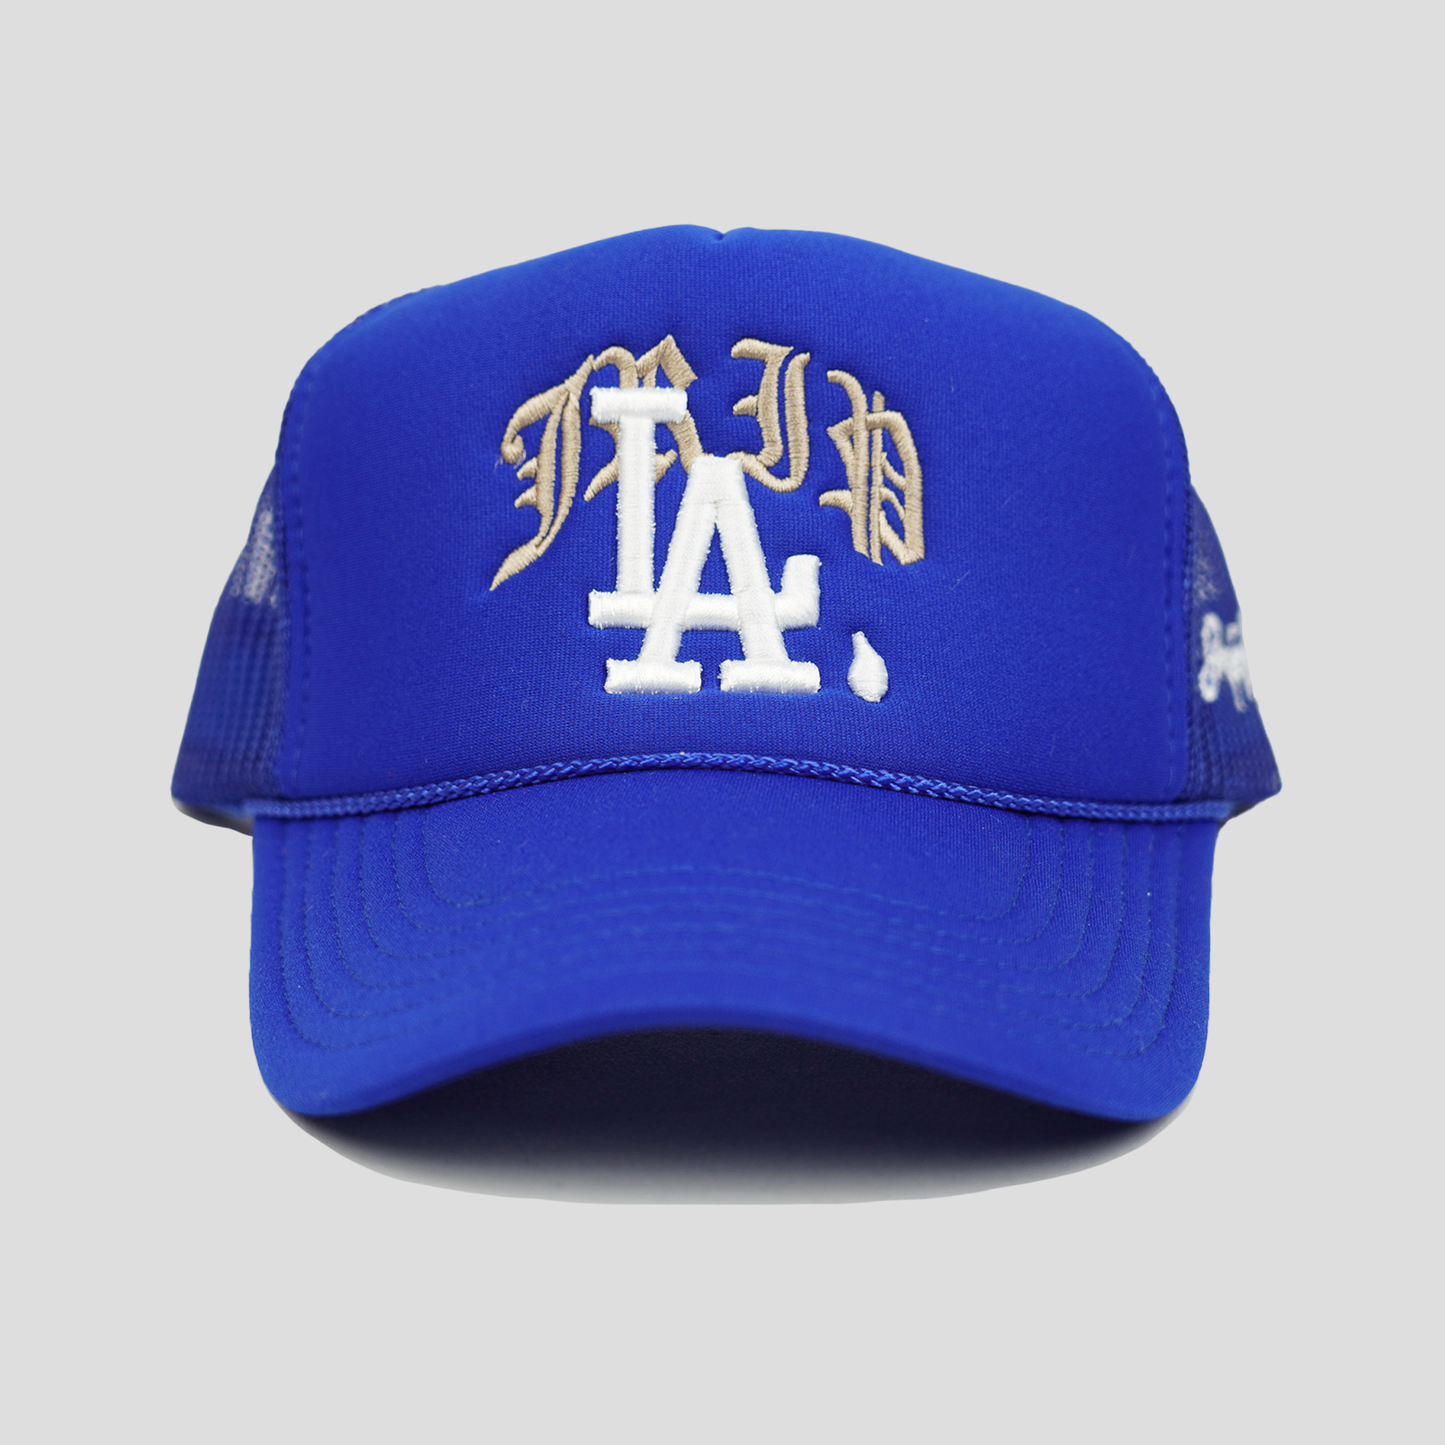 Jrip LA Trucker Hat (BLUE)